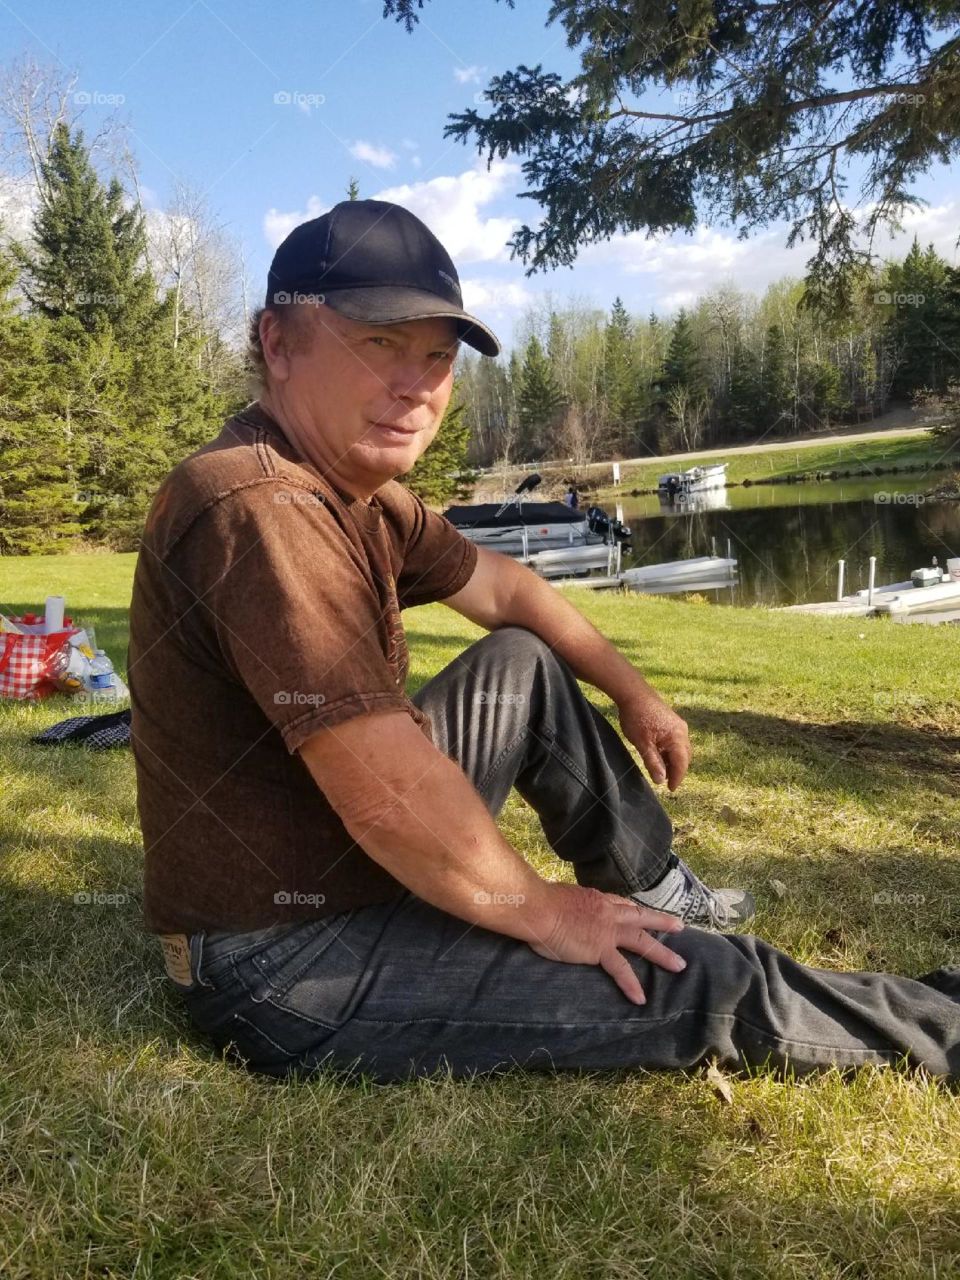 My dad enjoying time at the lake 